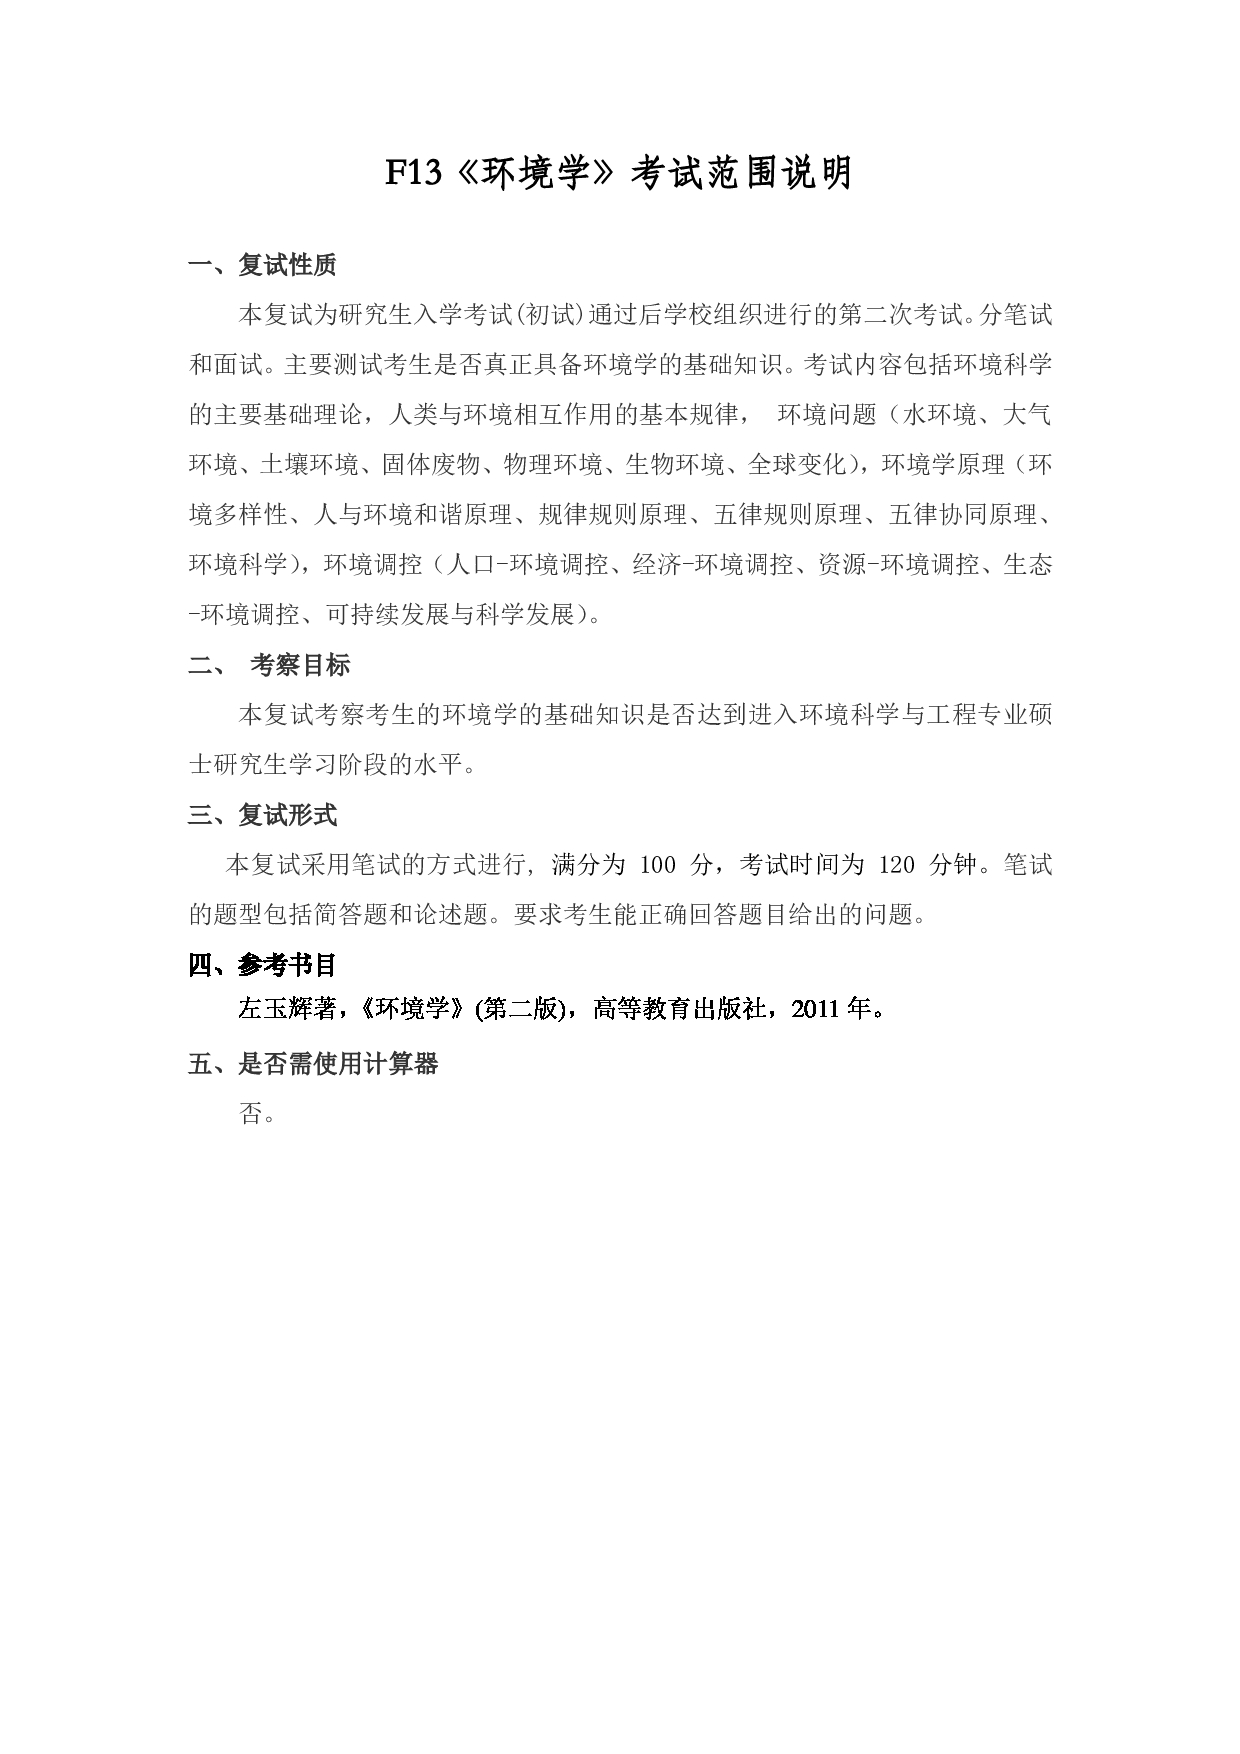 2022考研大纲：上海海洋大学2022年考研自命题科目 F13环境学 考试大纲第1页